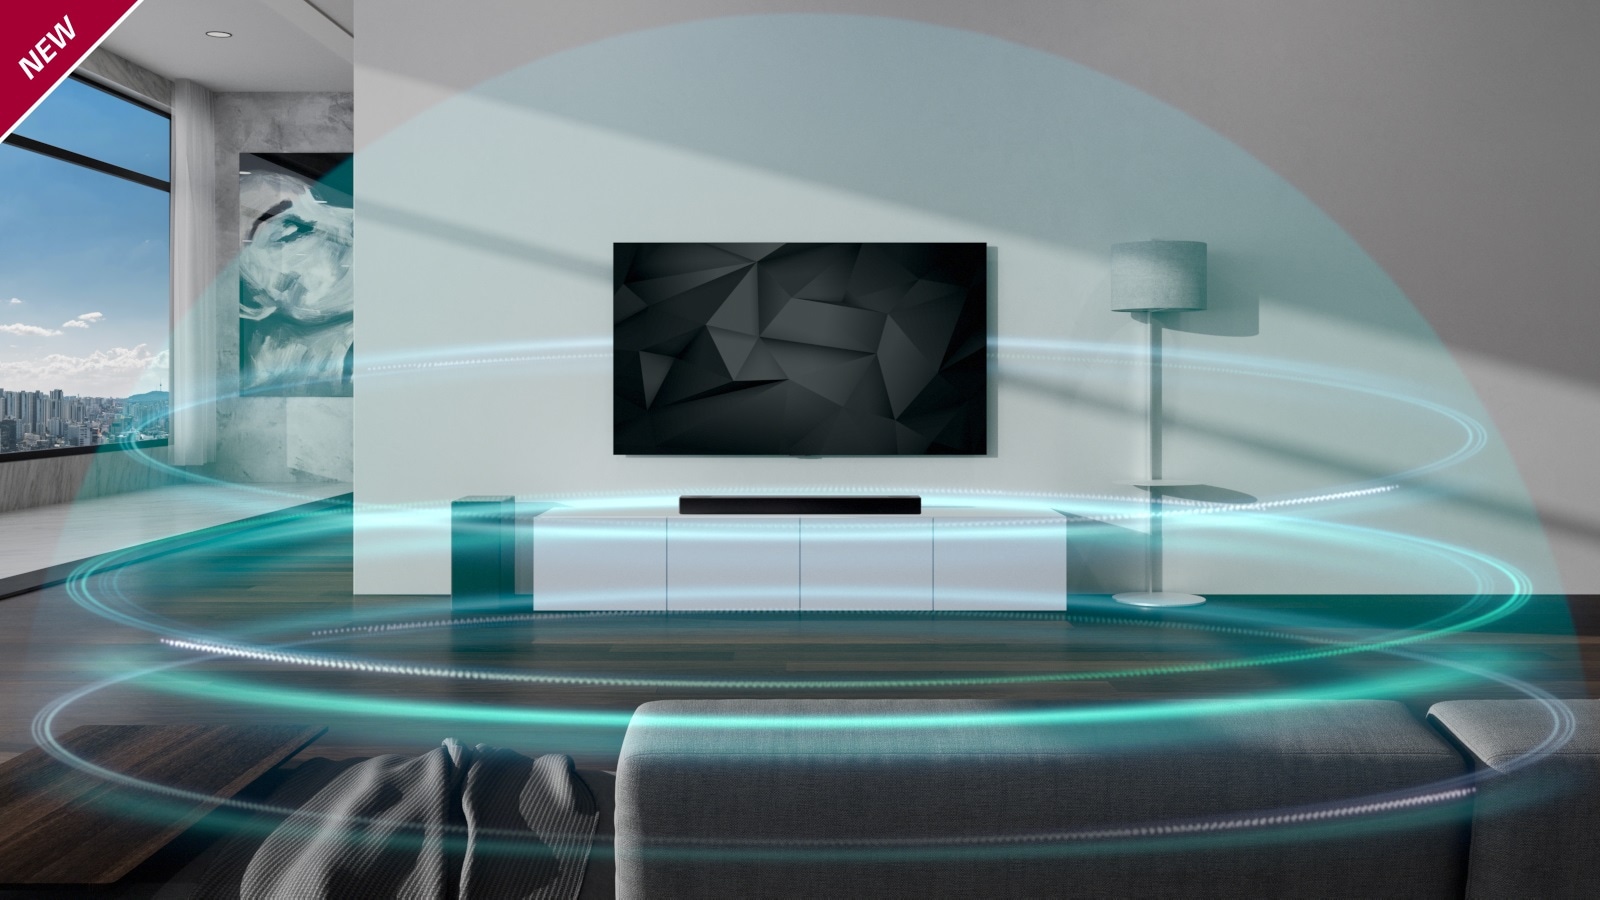 Ze soundbaru a televizoru LG vycházejí modré třívrstvé zvukové vlny ve tvaru kopule, které se rozprostírají po obývacím pokoji. V levém horním rohu je umístěn nápis NOVINKA.